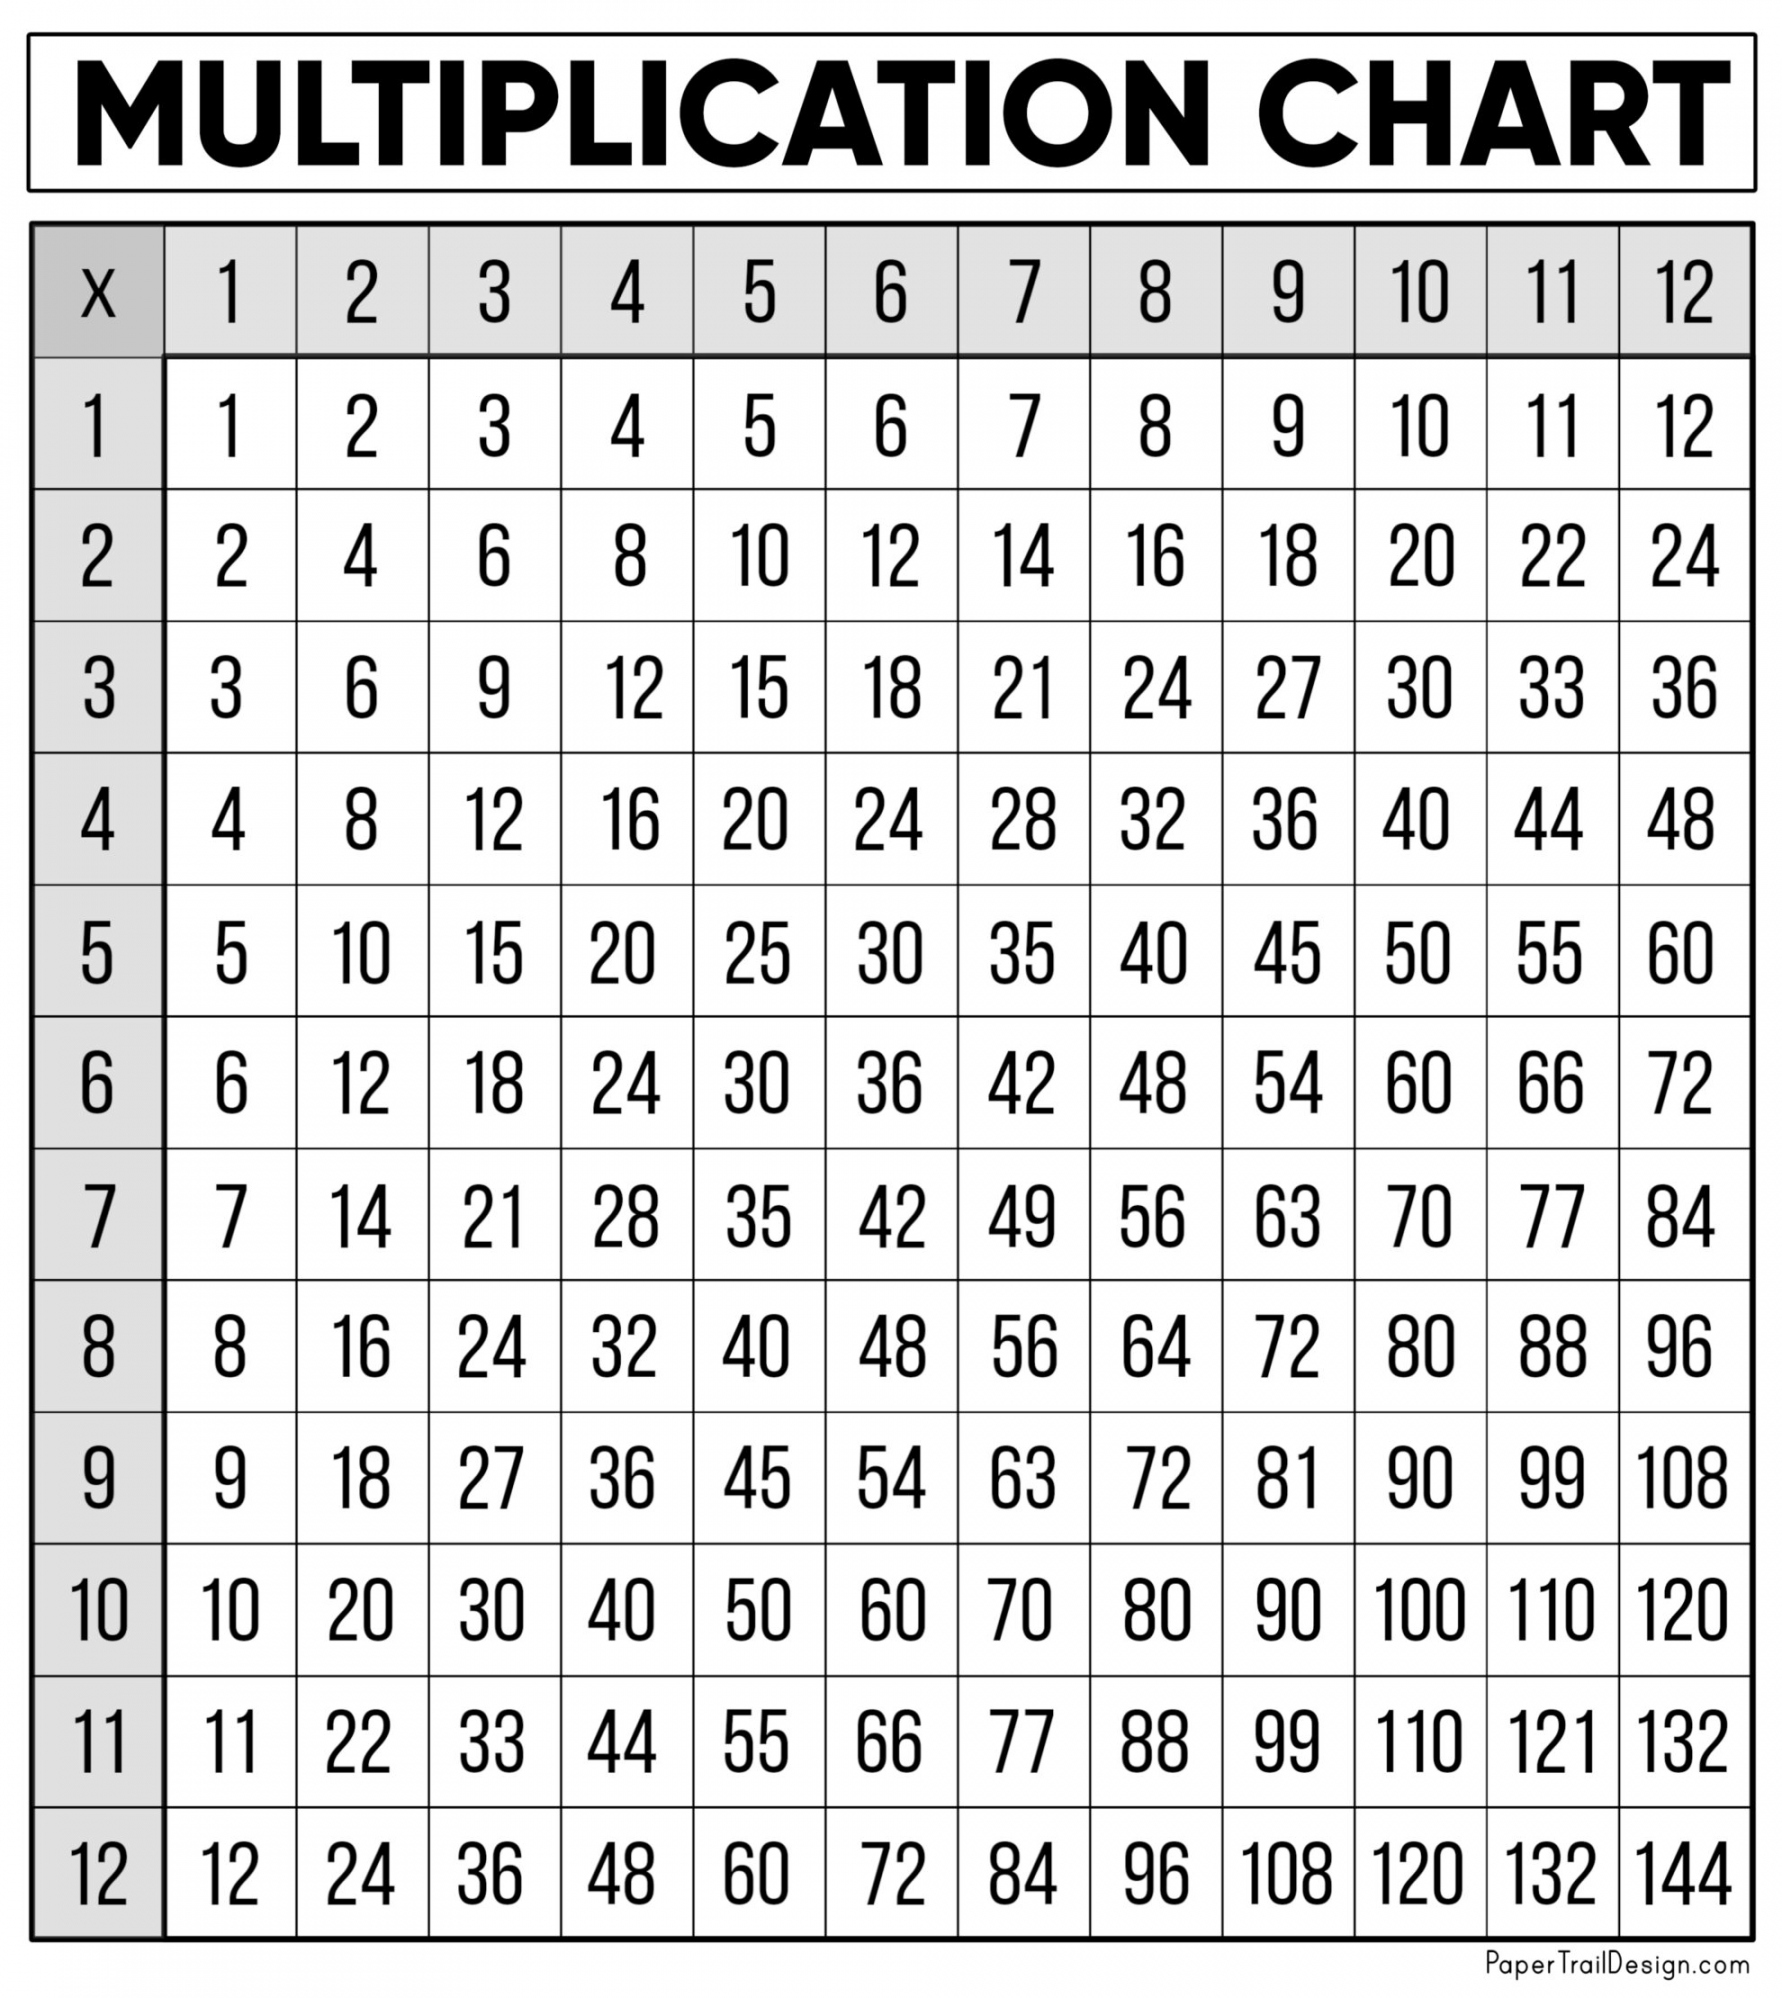 Multiplication Chart Printable Free - Printable - Free Multiplication Chart Printable - Paper Trail Design